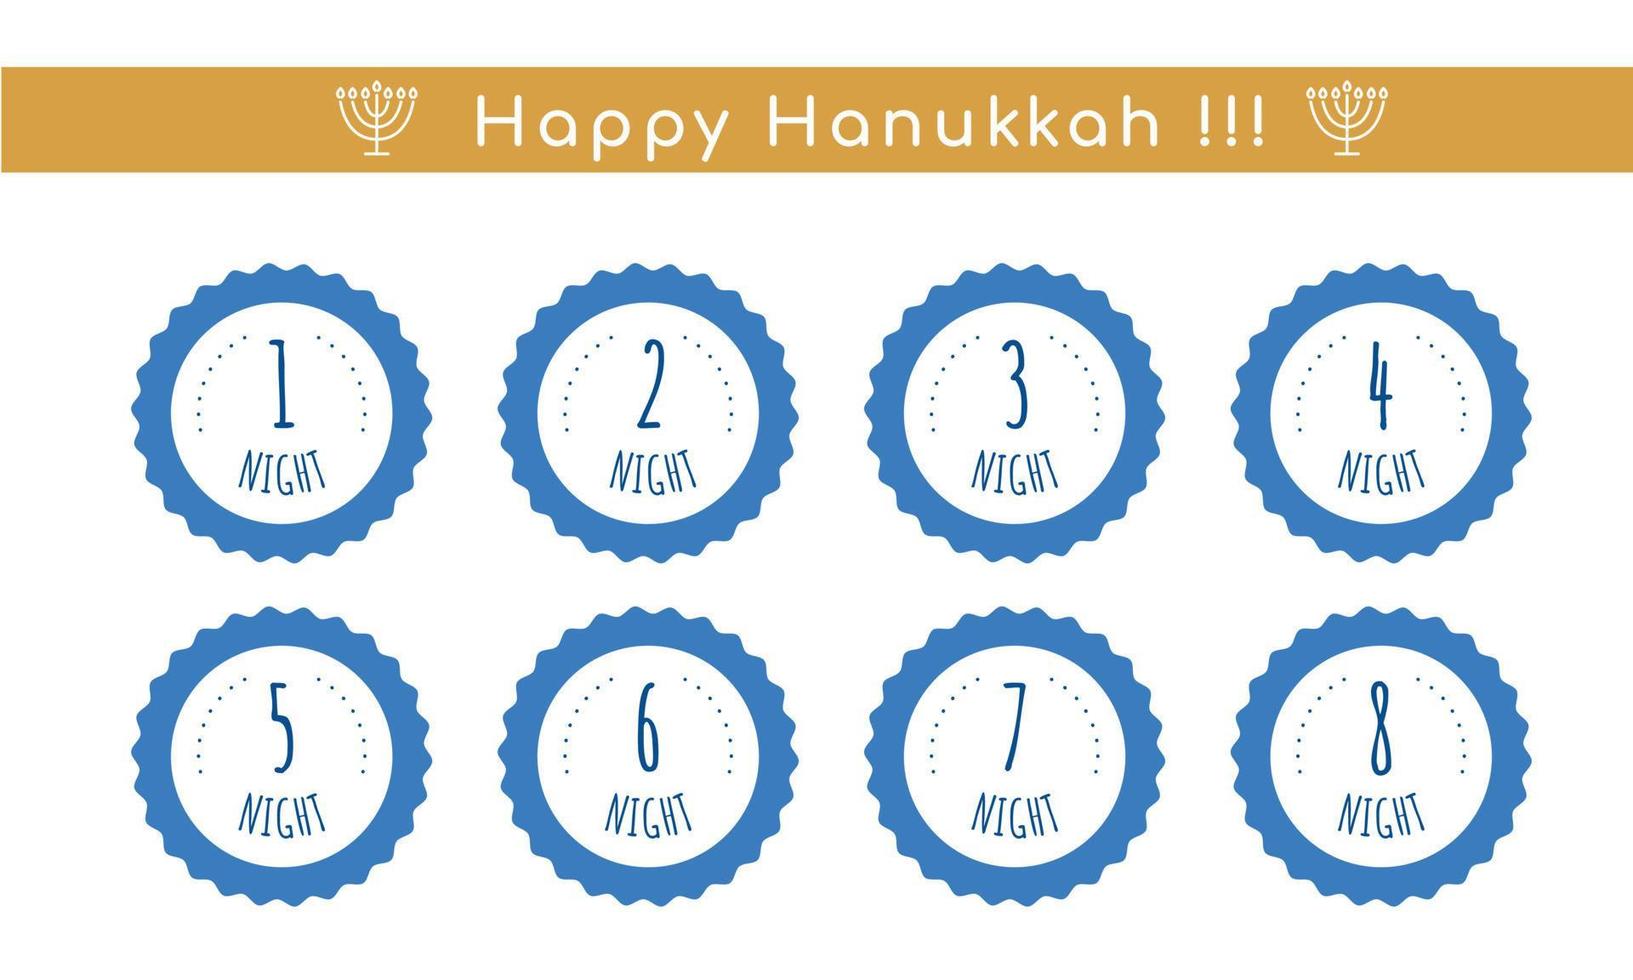 le candele hanukkah si accendono giorno dopo giorno. regole di illuminazione. tradizione ebraica della menorah. simbolo della religione, set di tag. illustrazione vettoriale